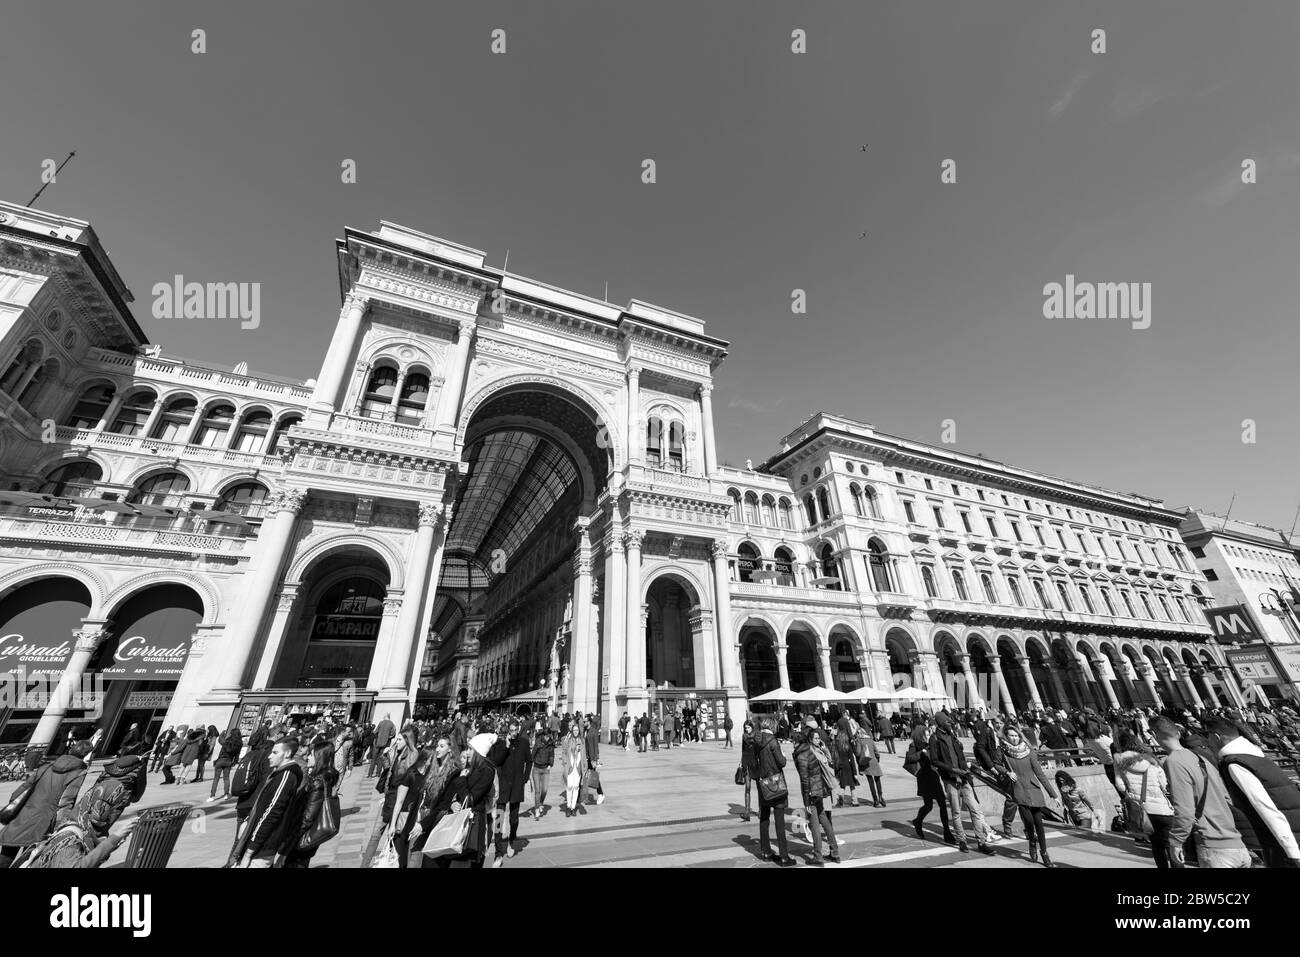 MAILAND, ITALIEN - 16, MÄRZ, 2018: Schwarz-weiß-Bild von der Außenseite der Galleria Vittorio Emanuele II, eine Besichtigung von Mailand, Italien Stockfoto